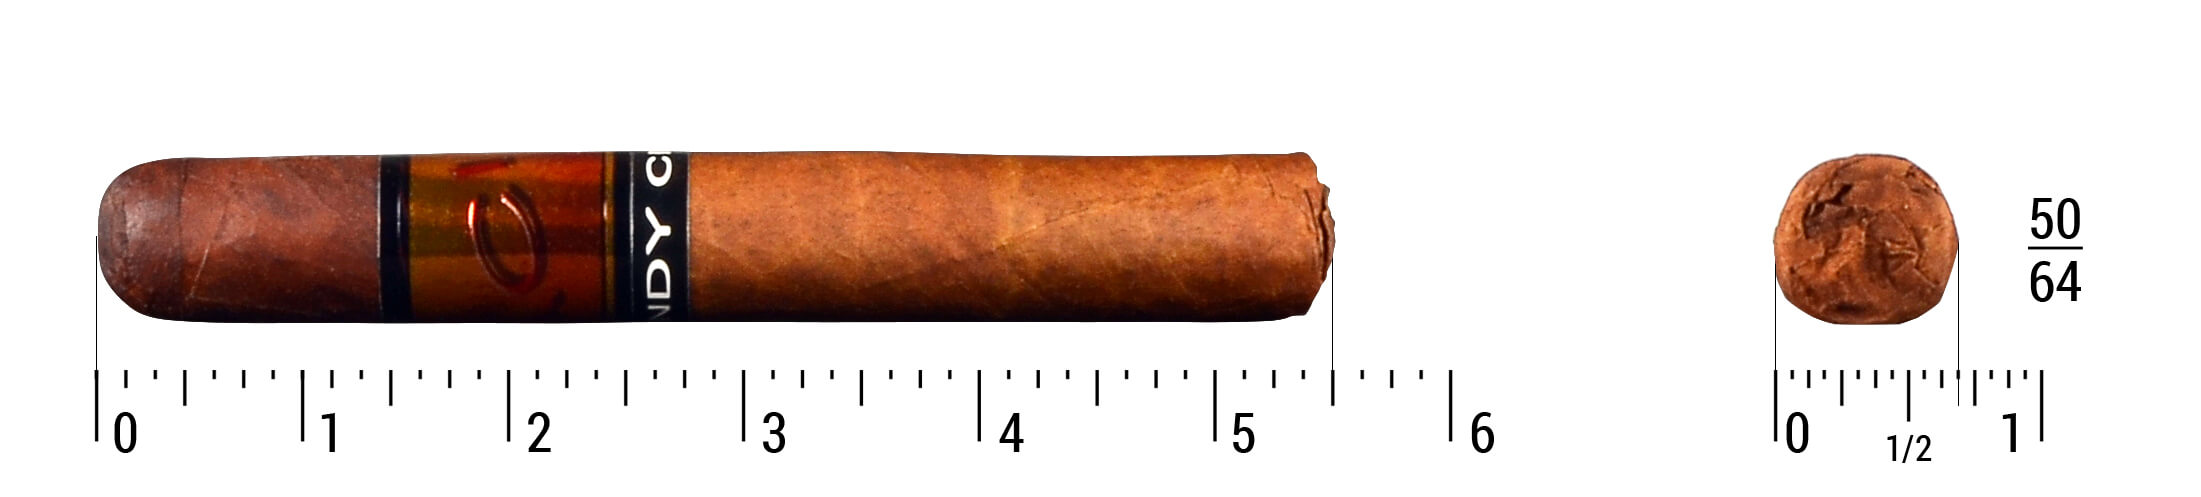 Acid Windy City Single Cigar Size